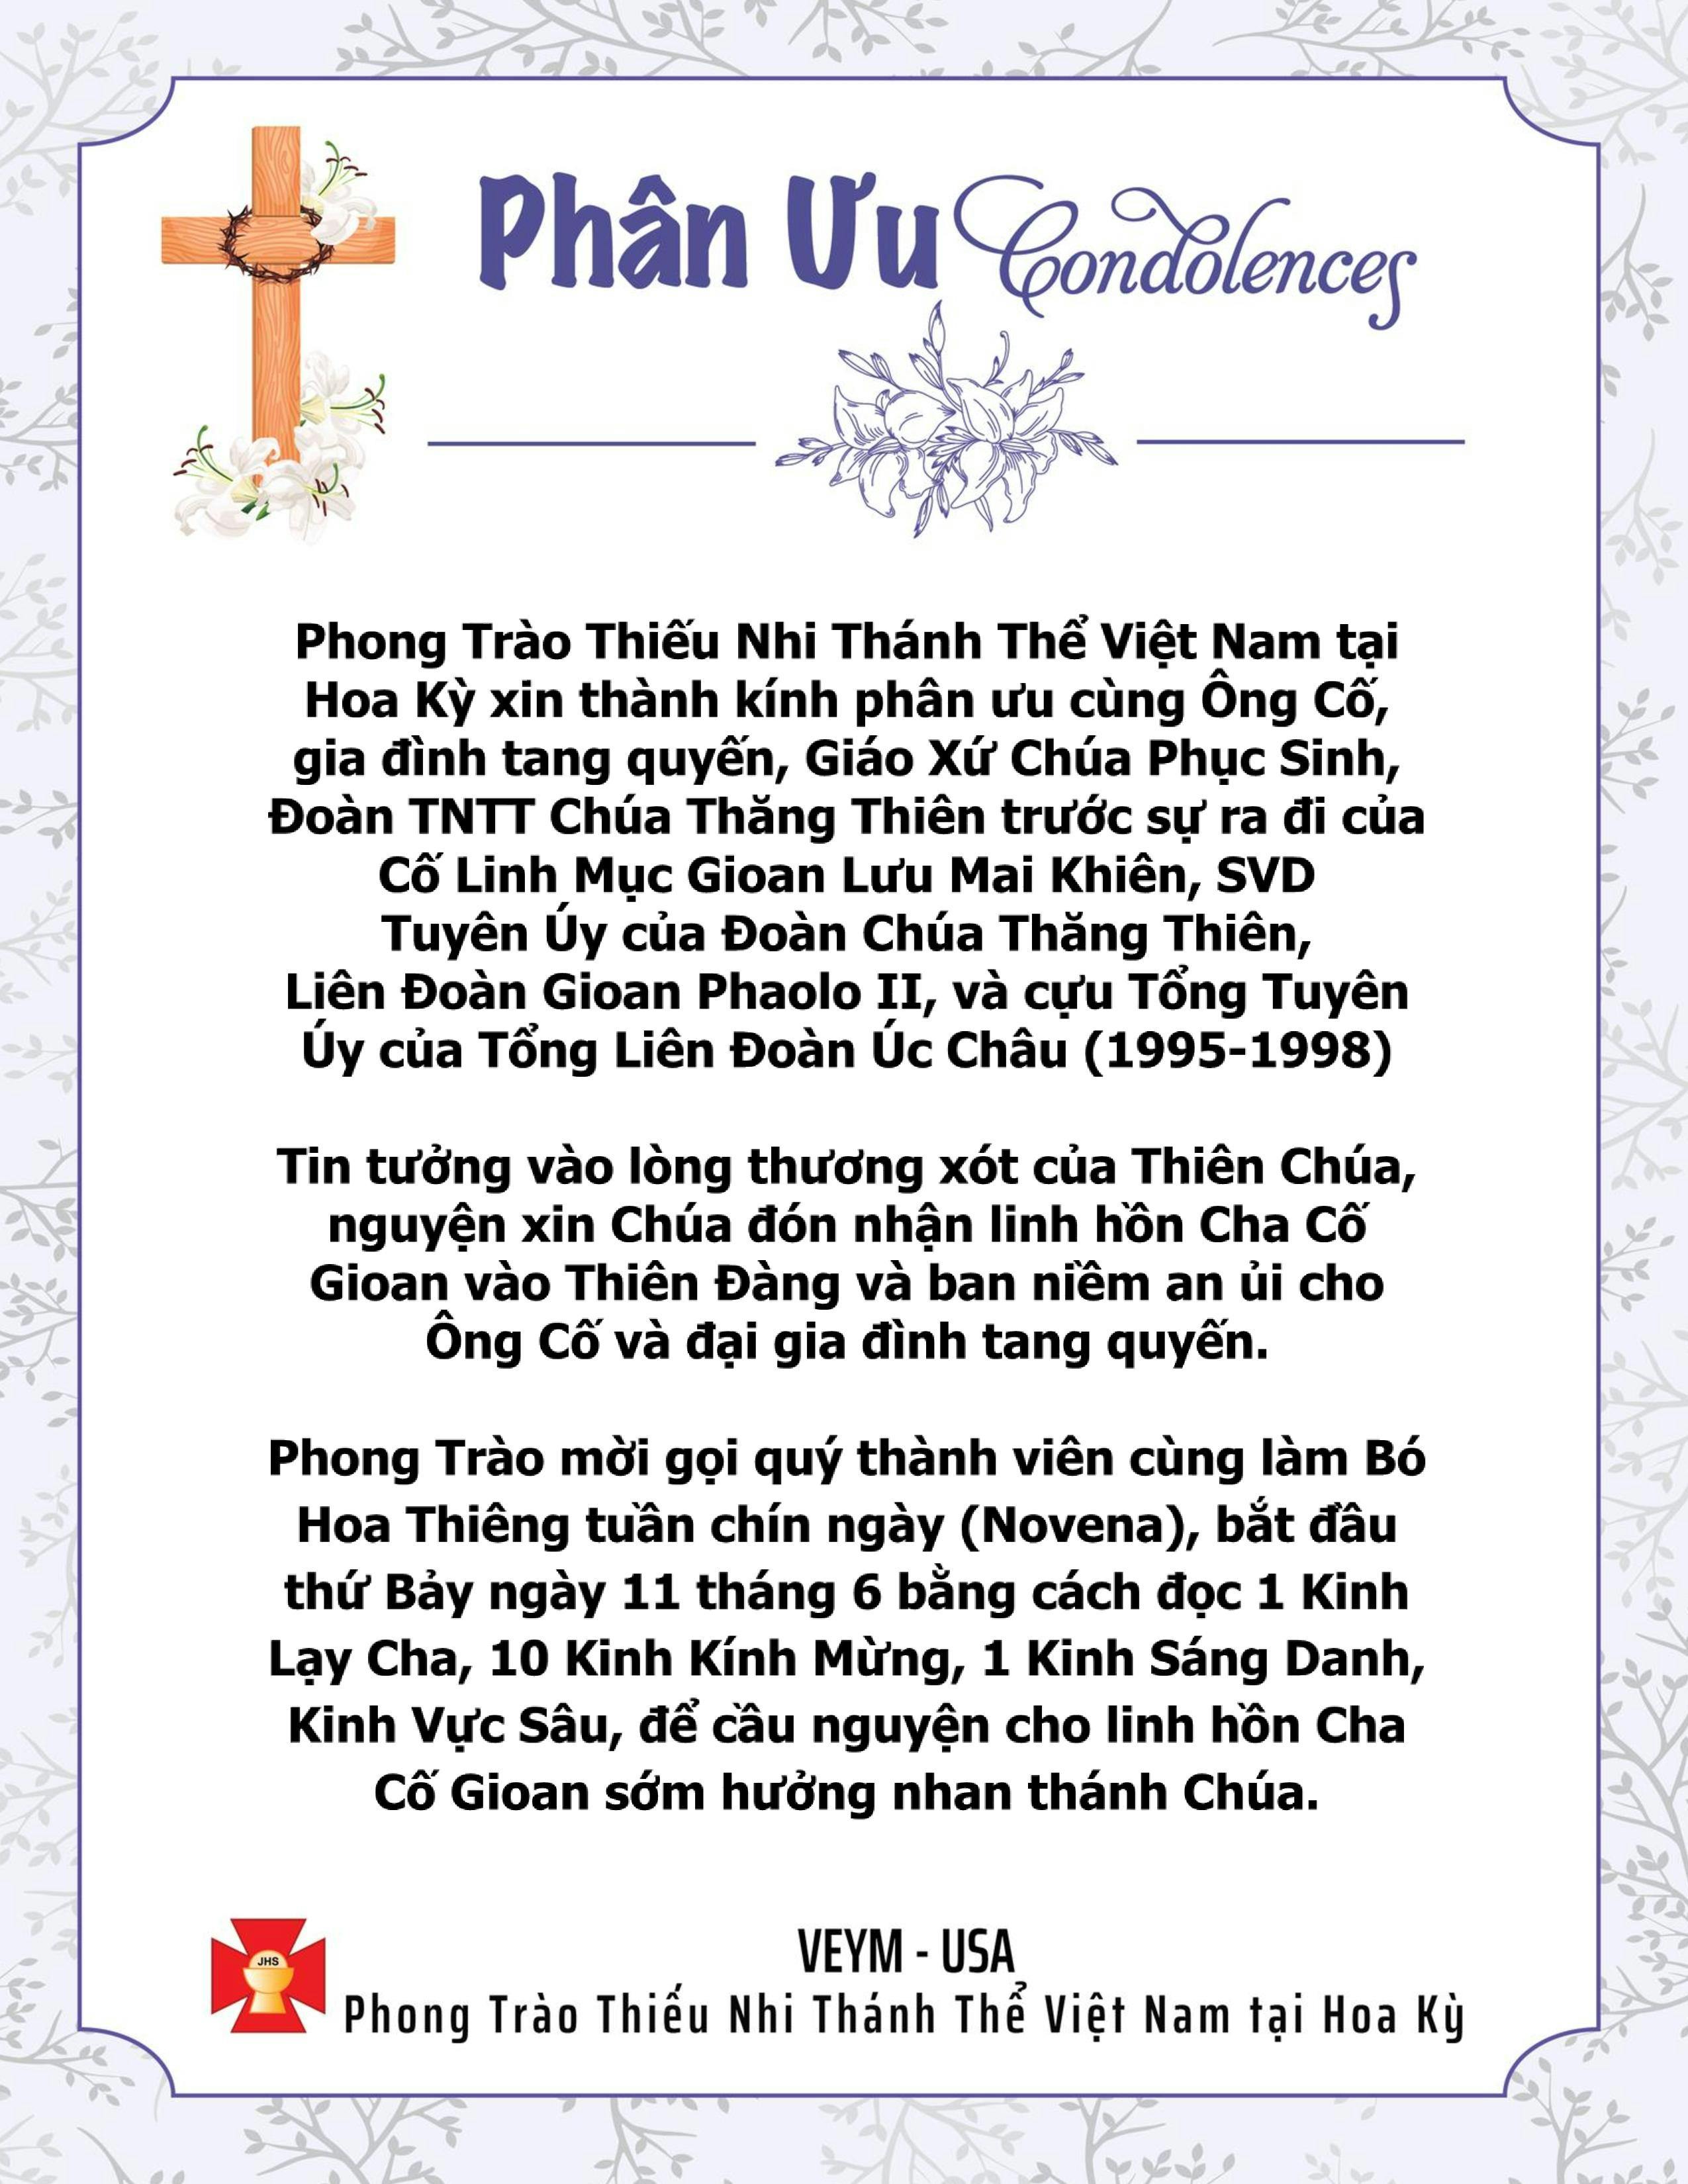 RIP Cha Cố Gioan Lưu Mai Khiên, SVD - Thành Kính Phân Ưu